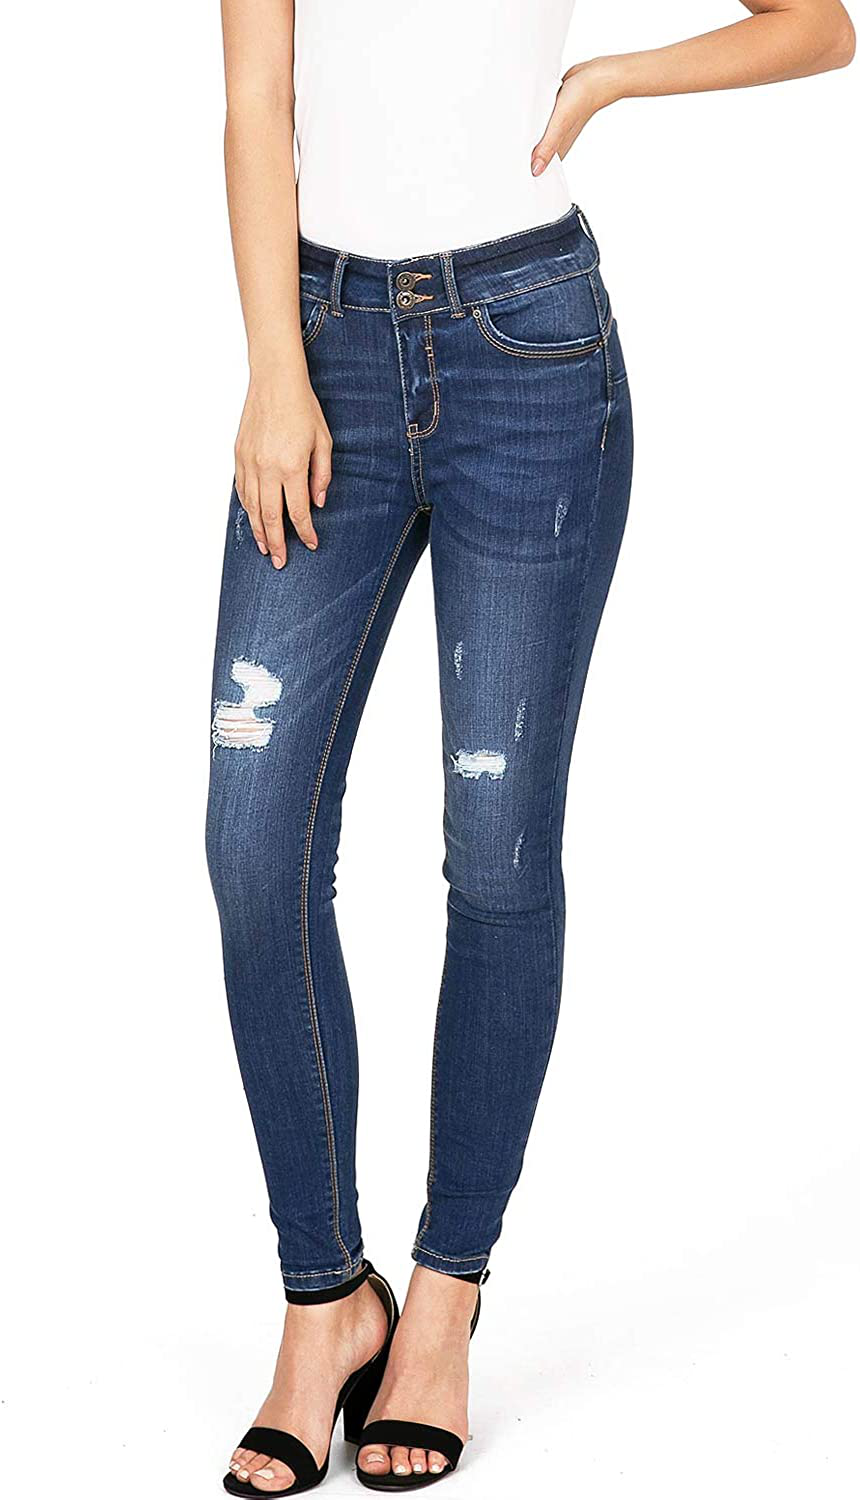 Wax Jeans Women's Juniors High Waist Light Distressing Skinny Jeans